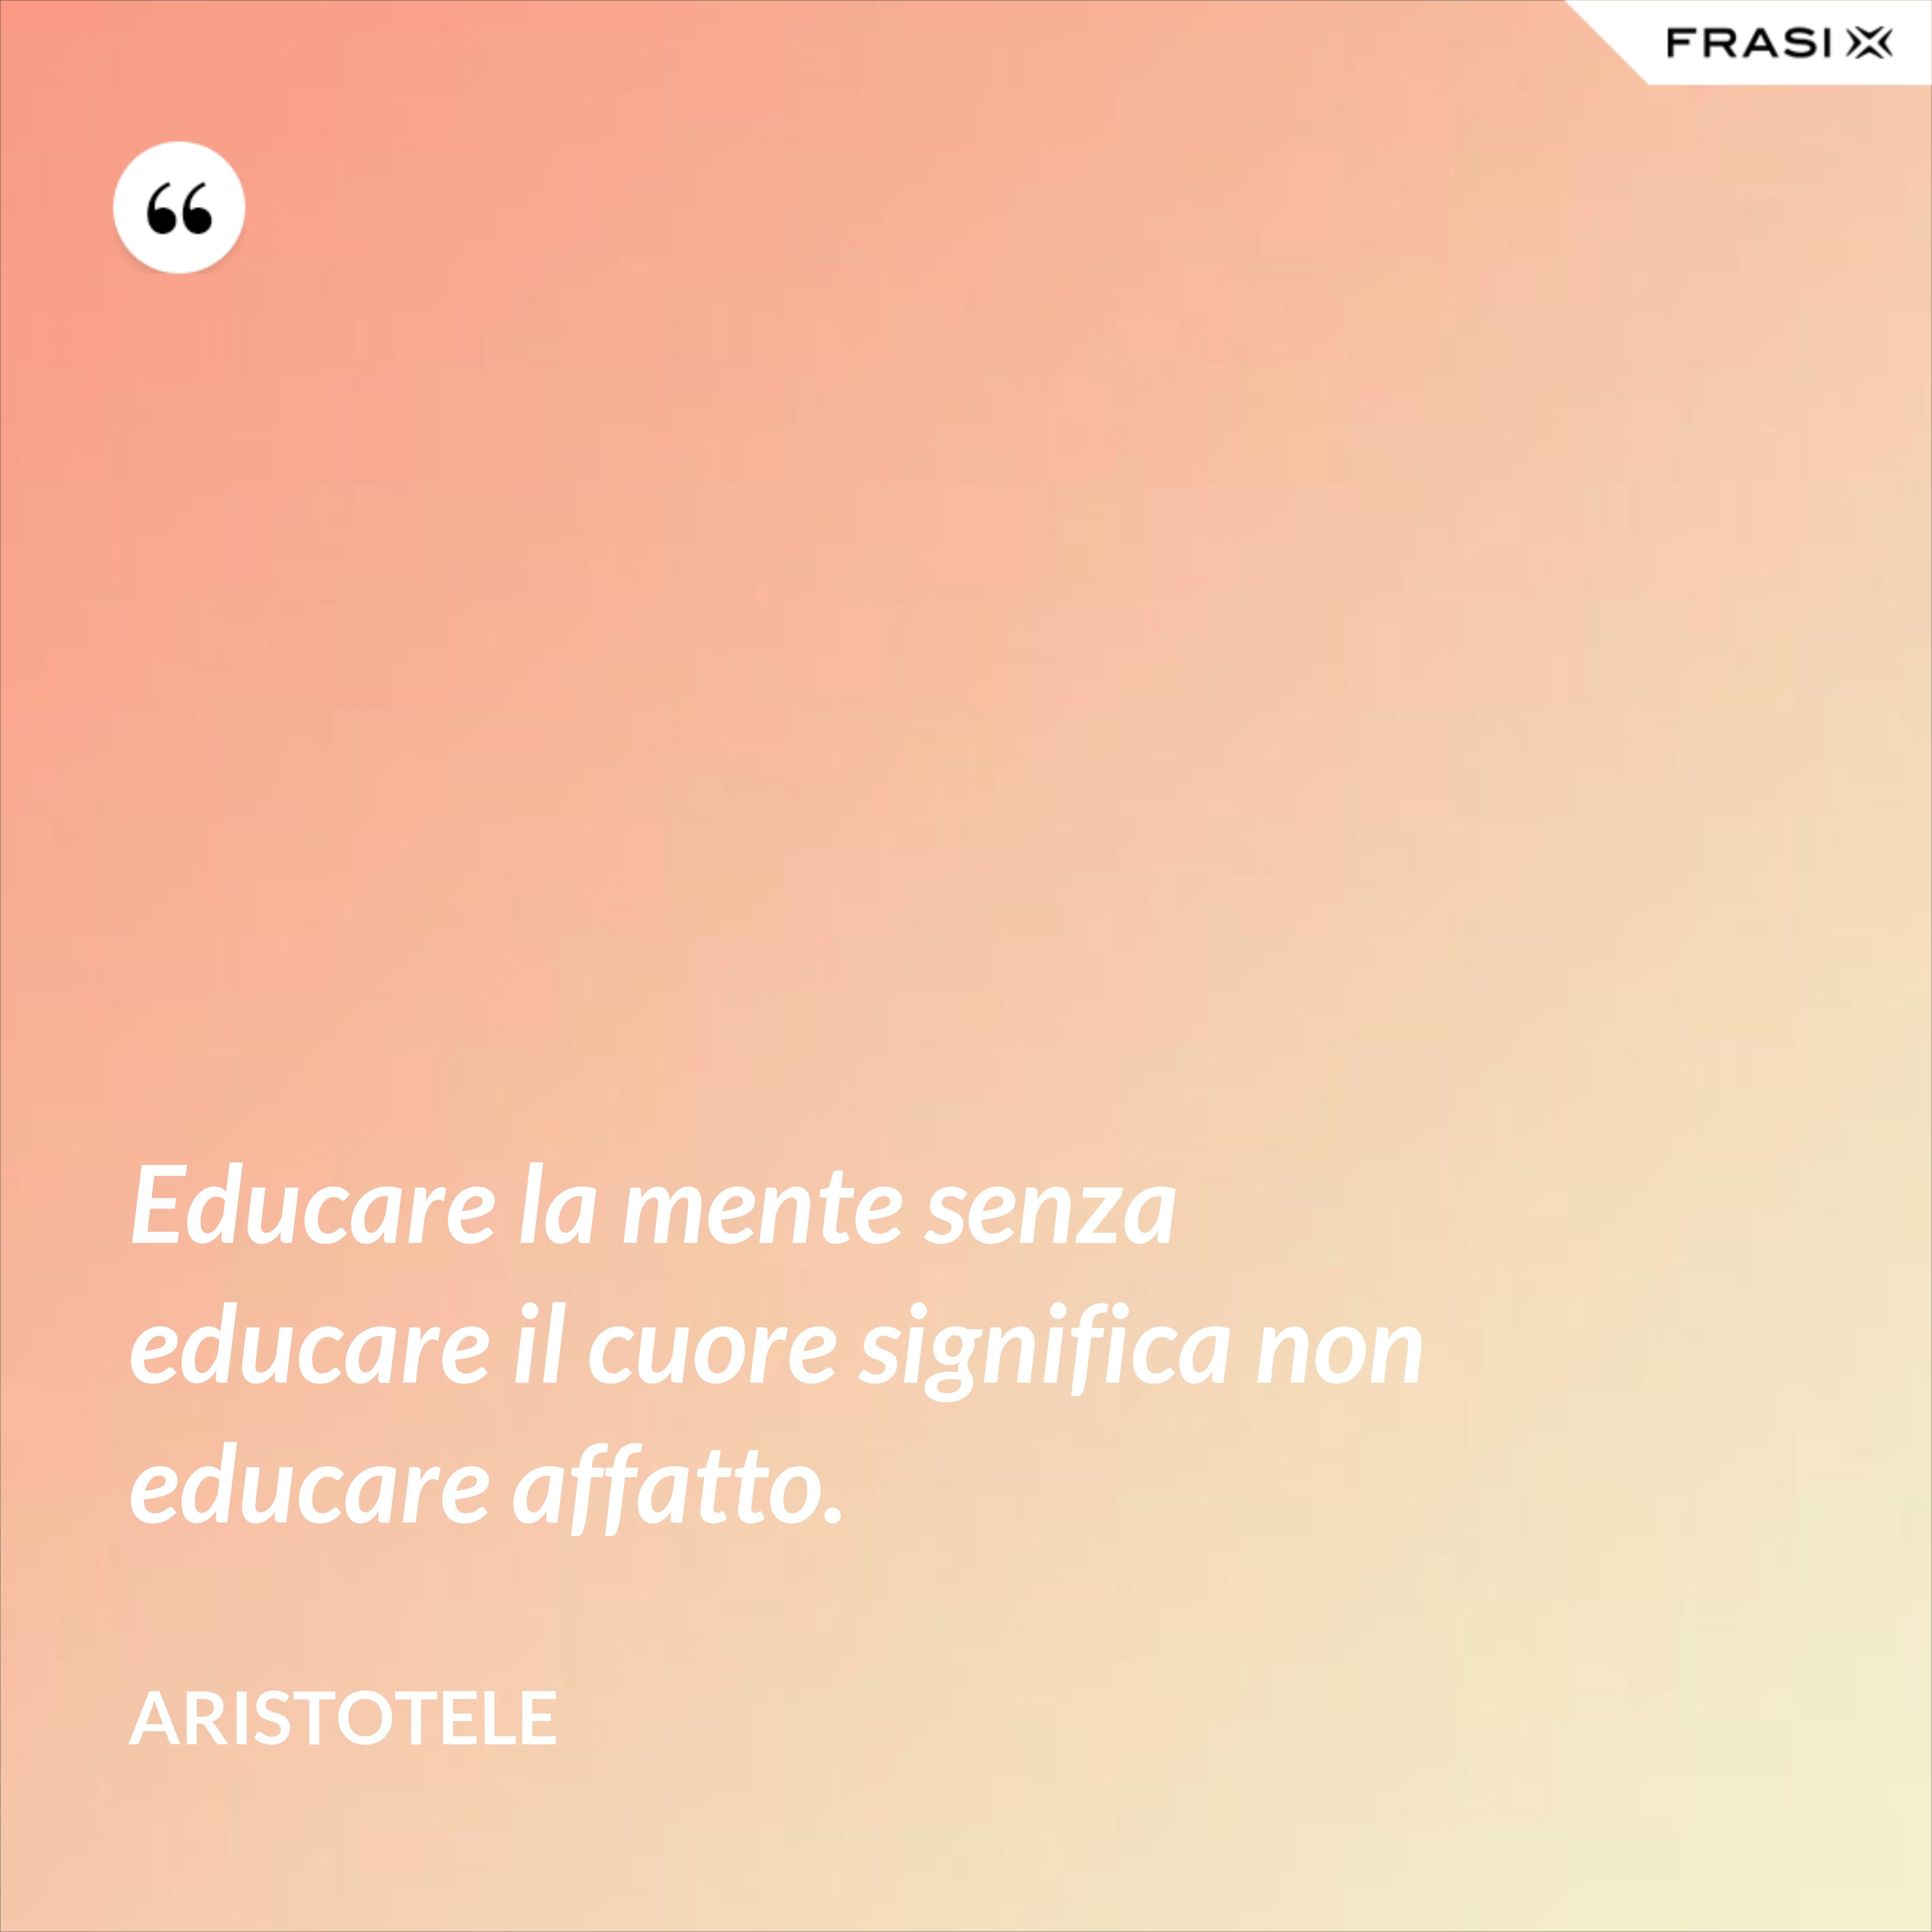 Educare la mente senza educare il cuore significa non educare affatto. - Aristotele